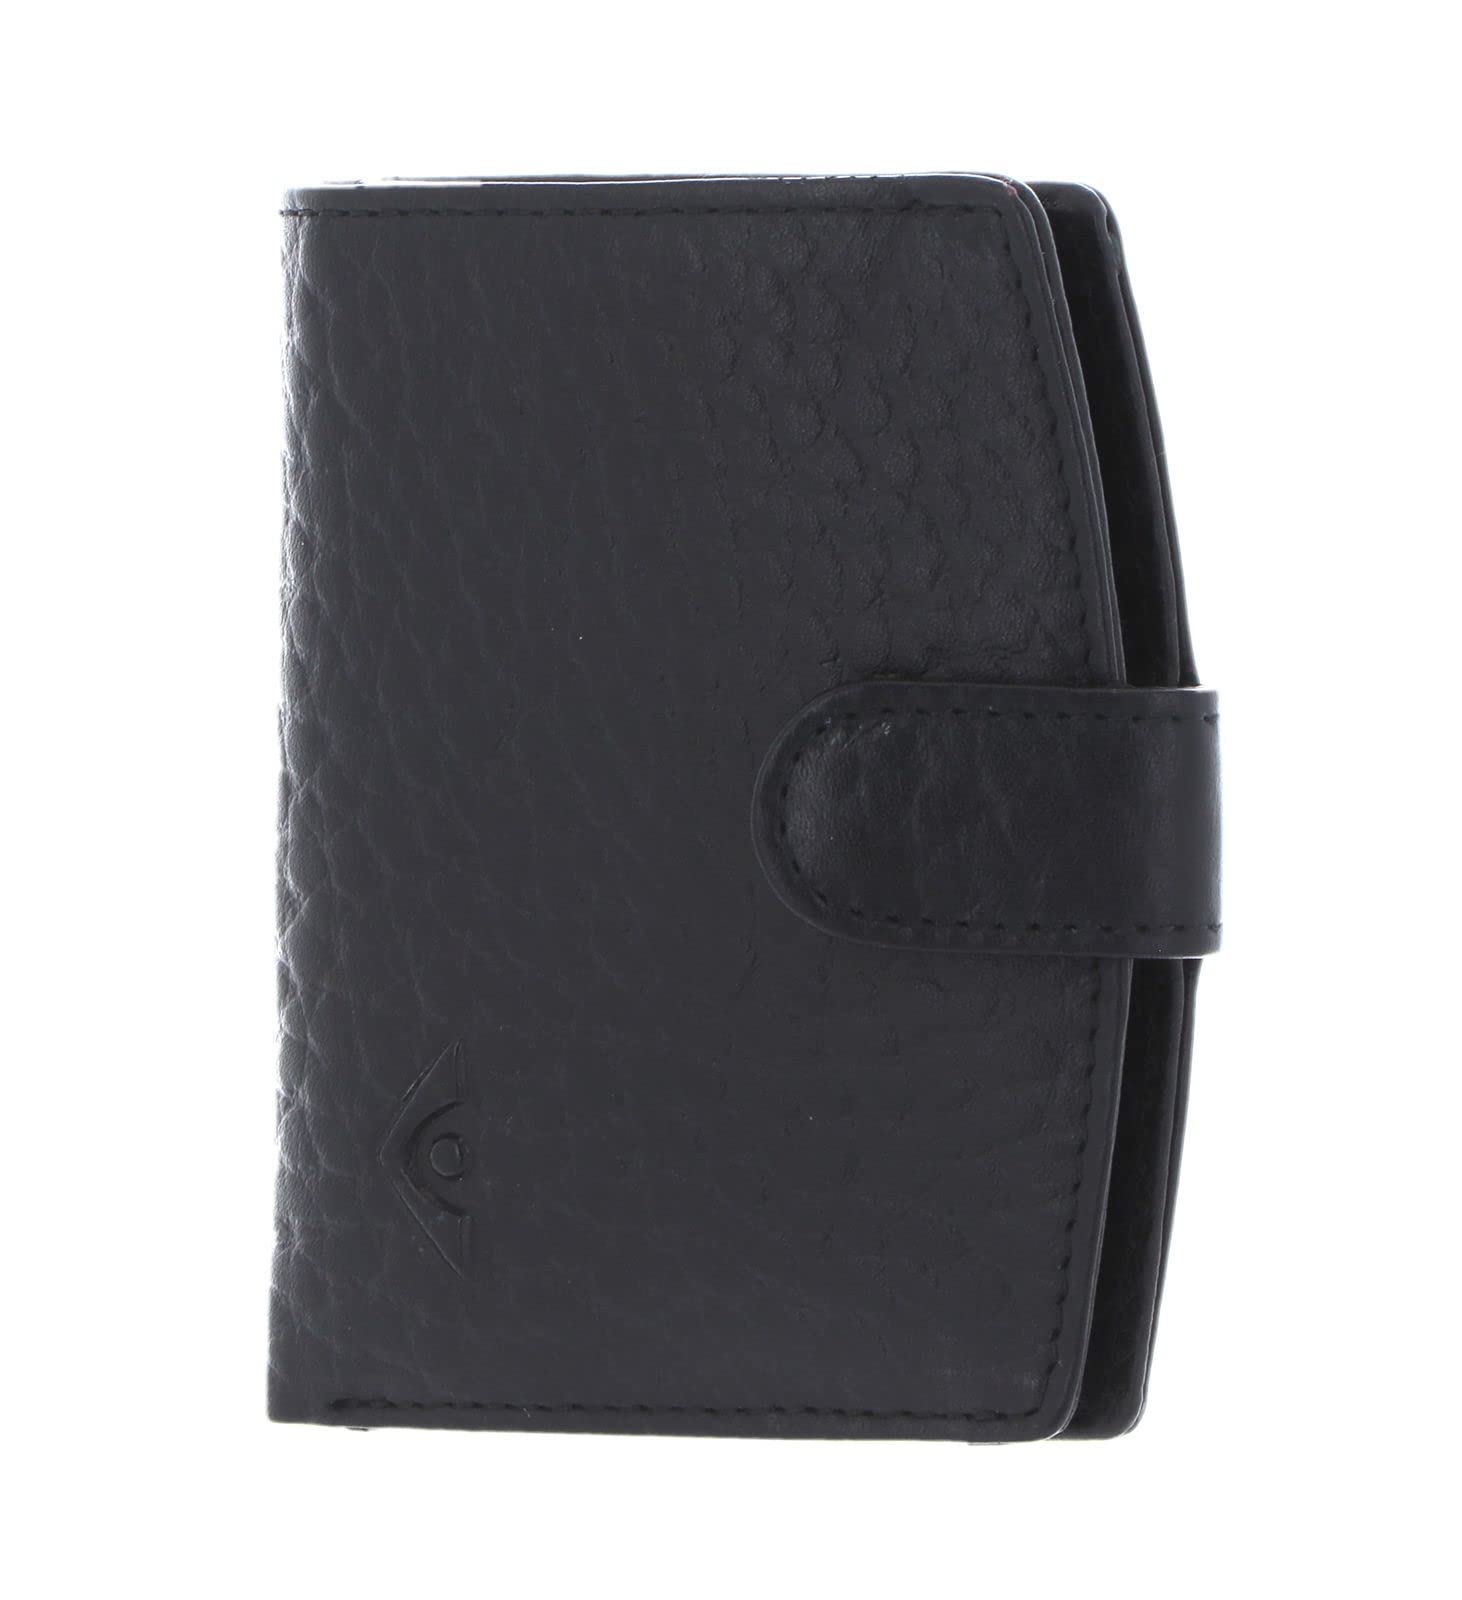 Voi leather design 70194 HIRSCH-Prägung Minibörse Damen: Farbe: schwarz